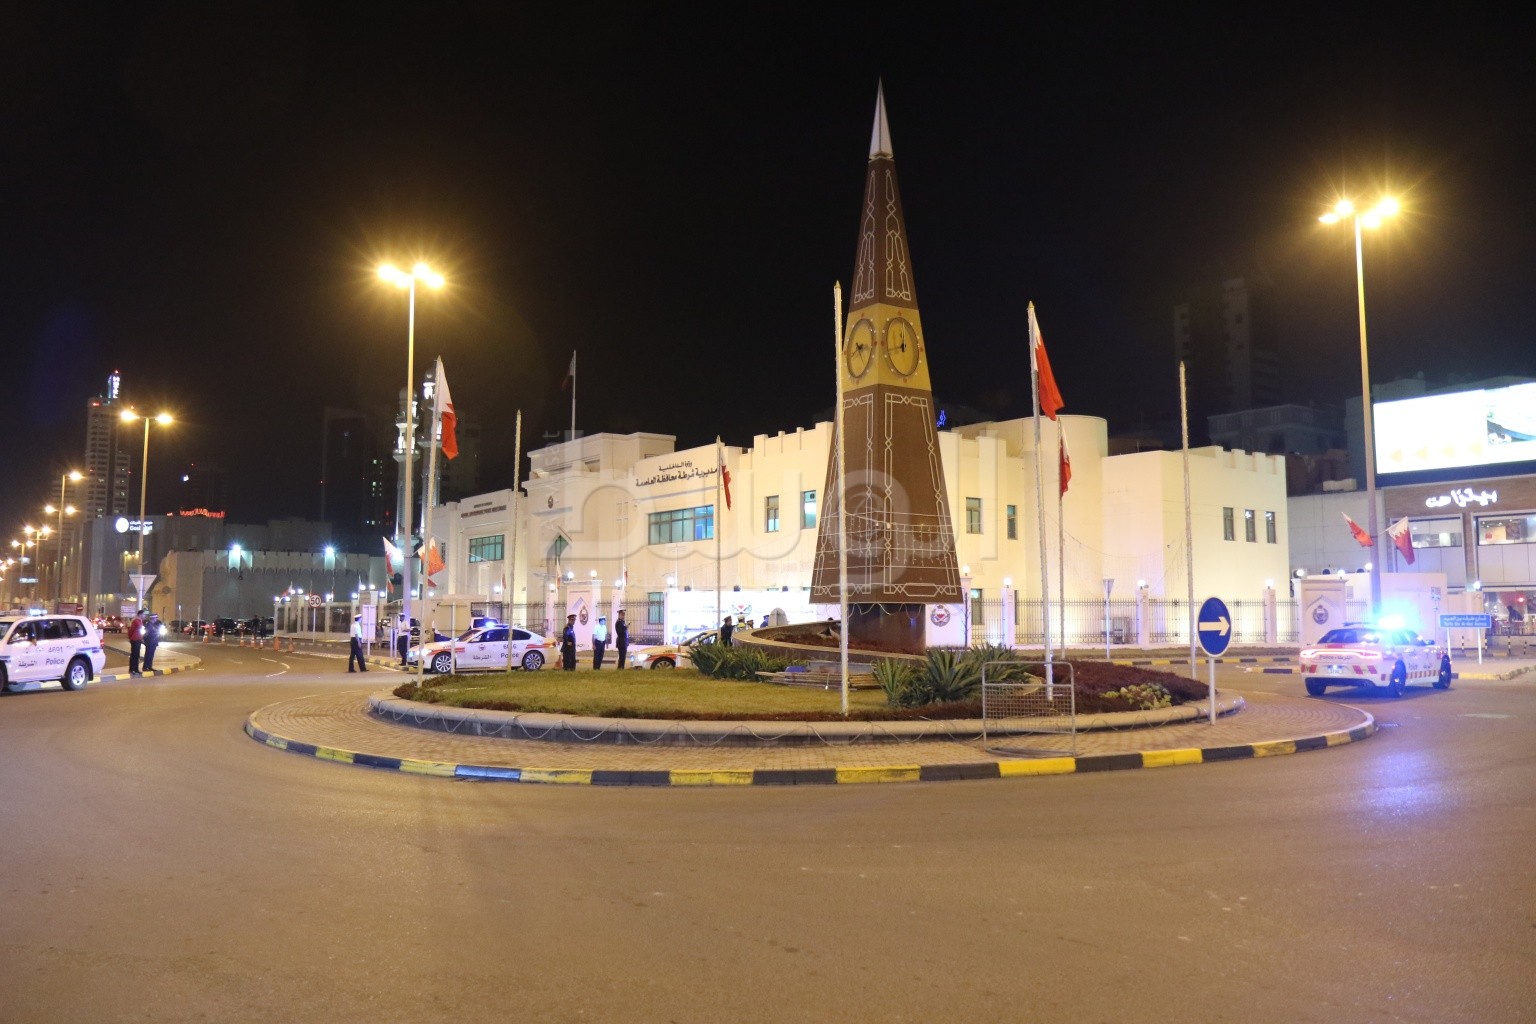 شارع المعارض في البحرين